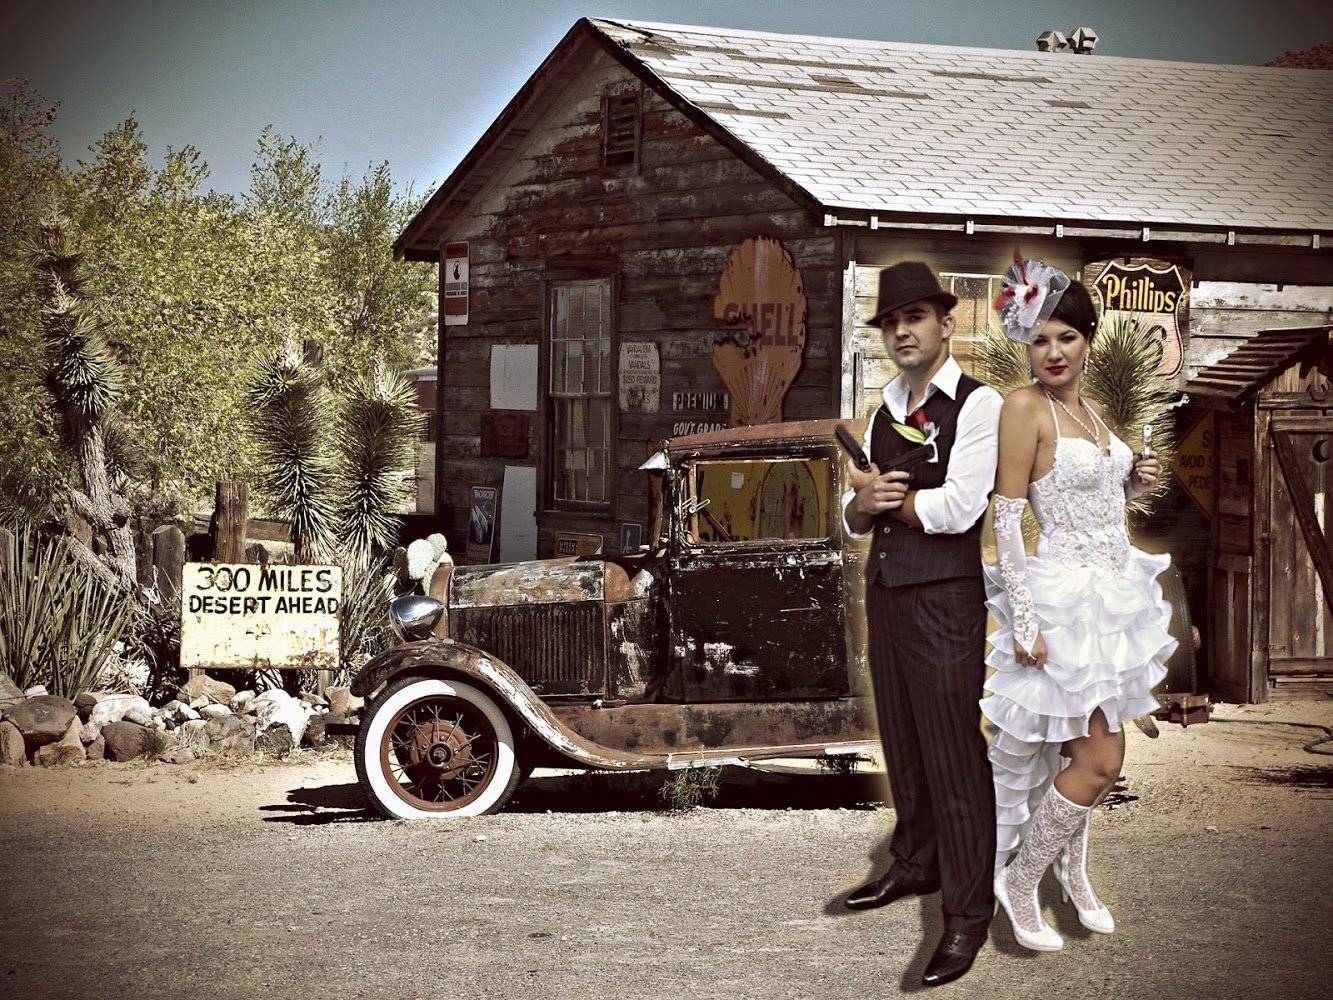 Свадьба в стиле чикаго — как оформить гангстерскую свадьбу в стиле 30-х годов?